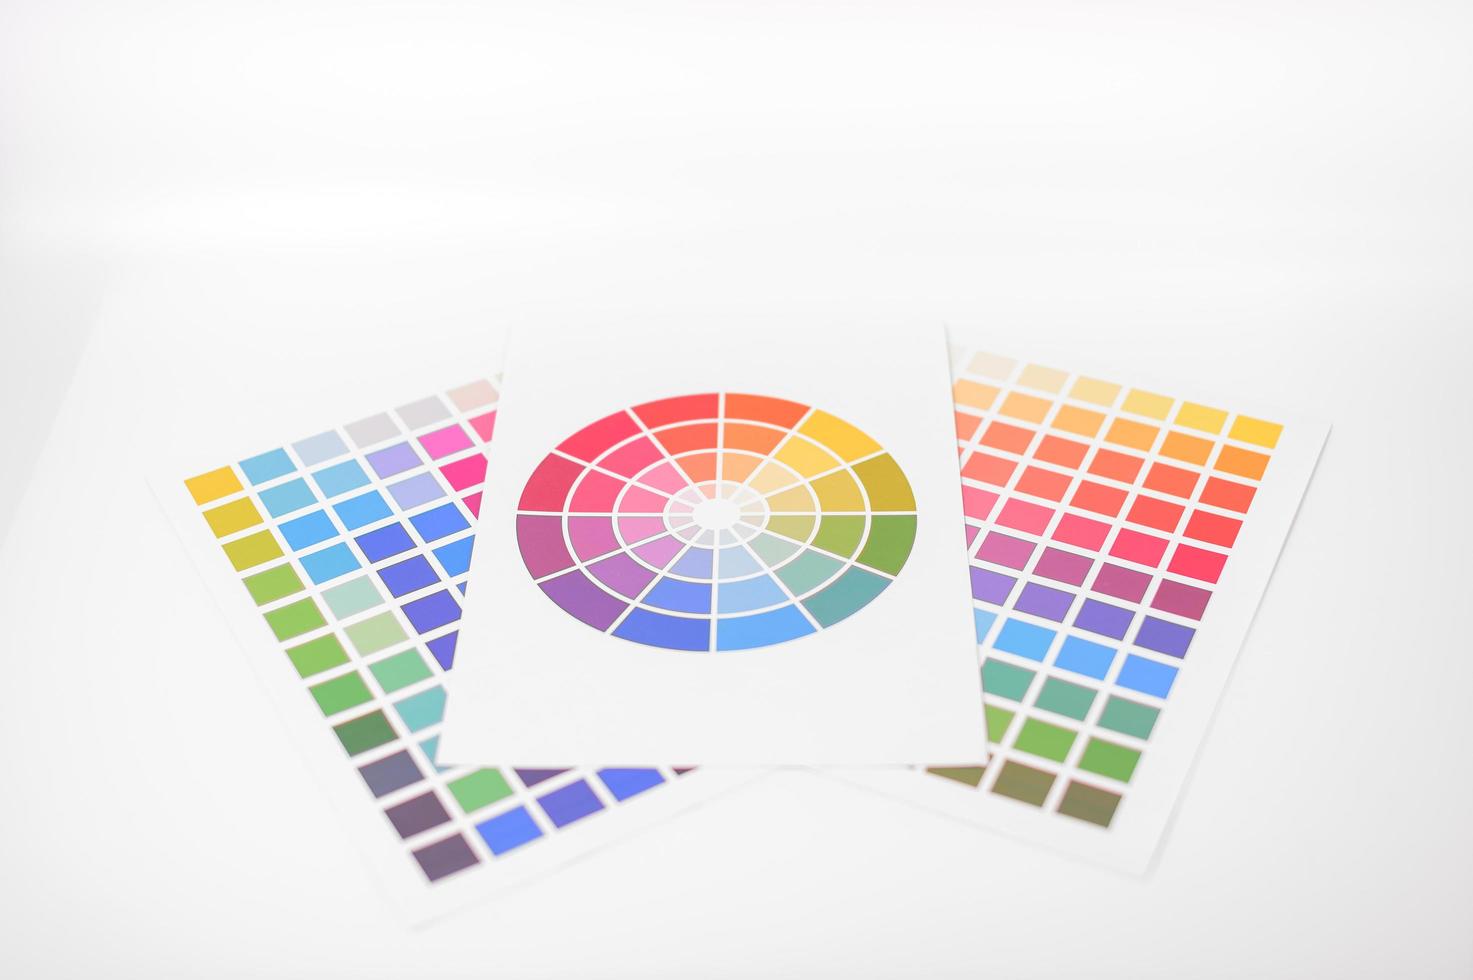 testes de cores colocados em fundo branco foto